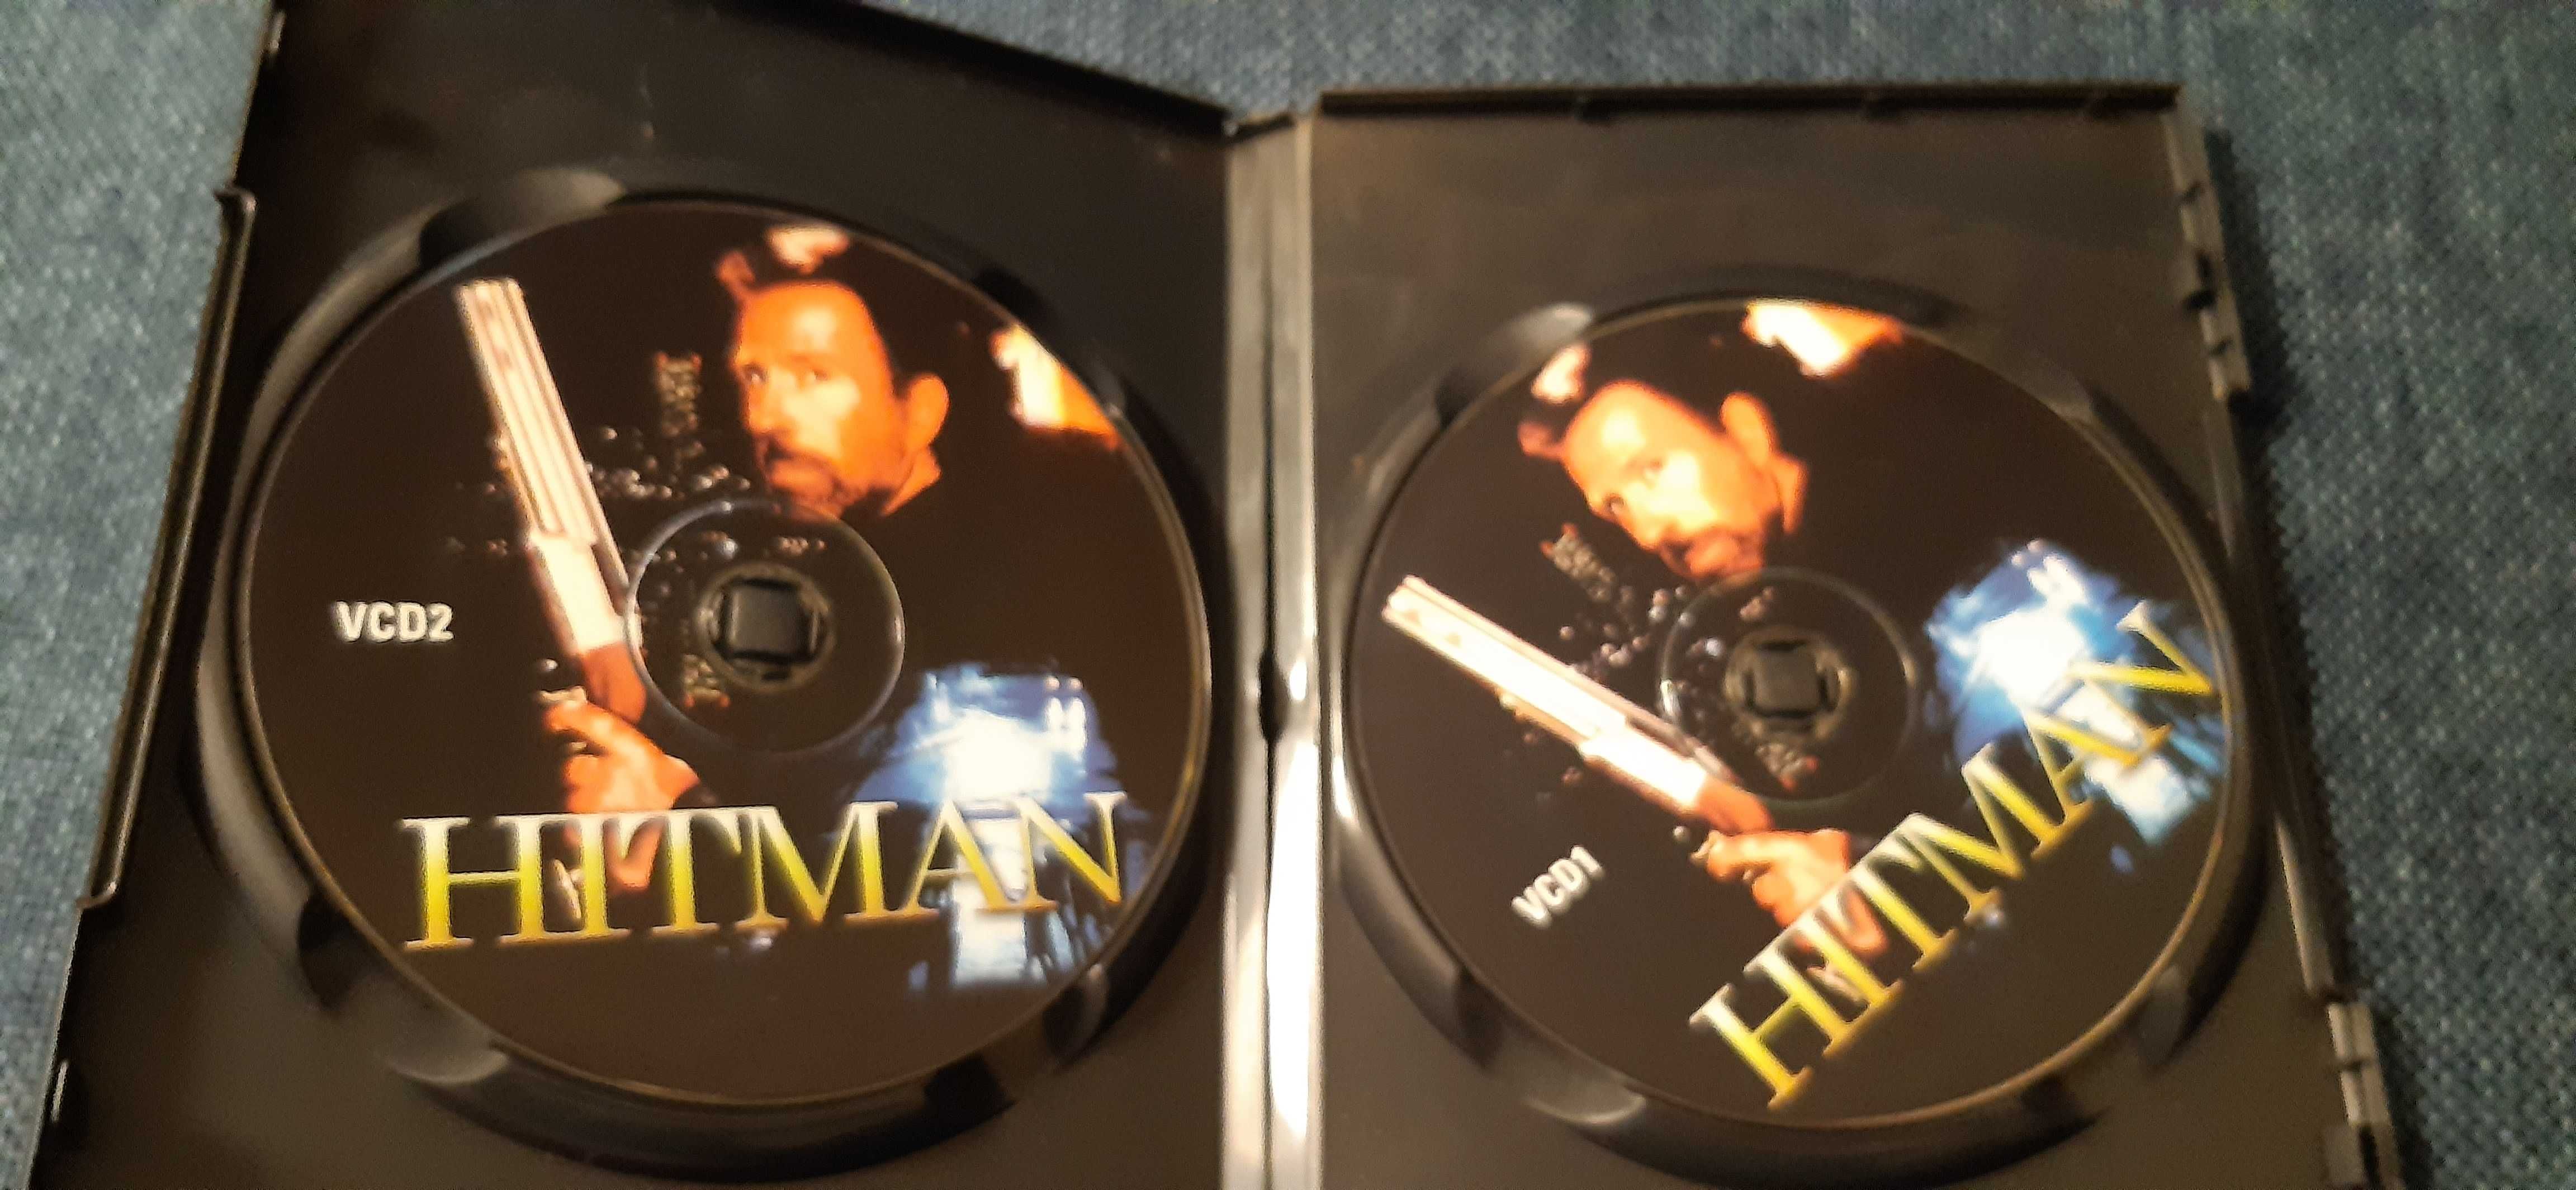 Hitman - Chuck Norris 2vcd